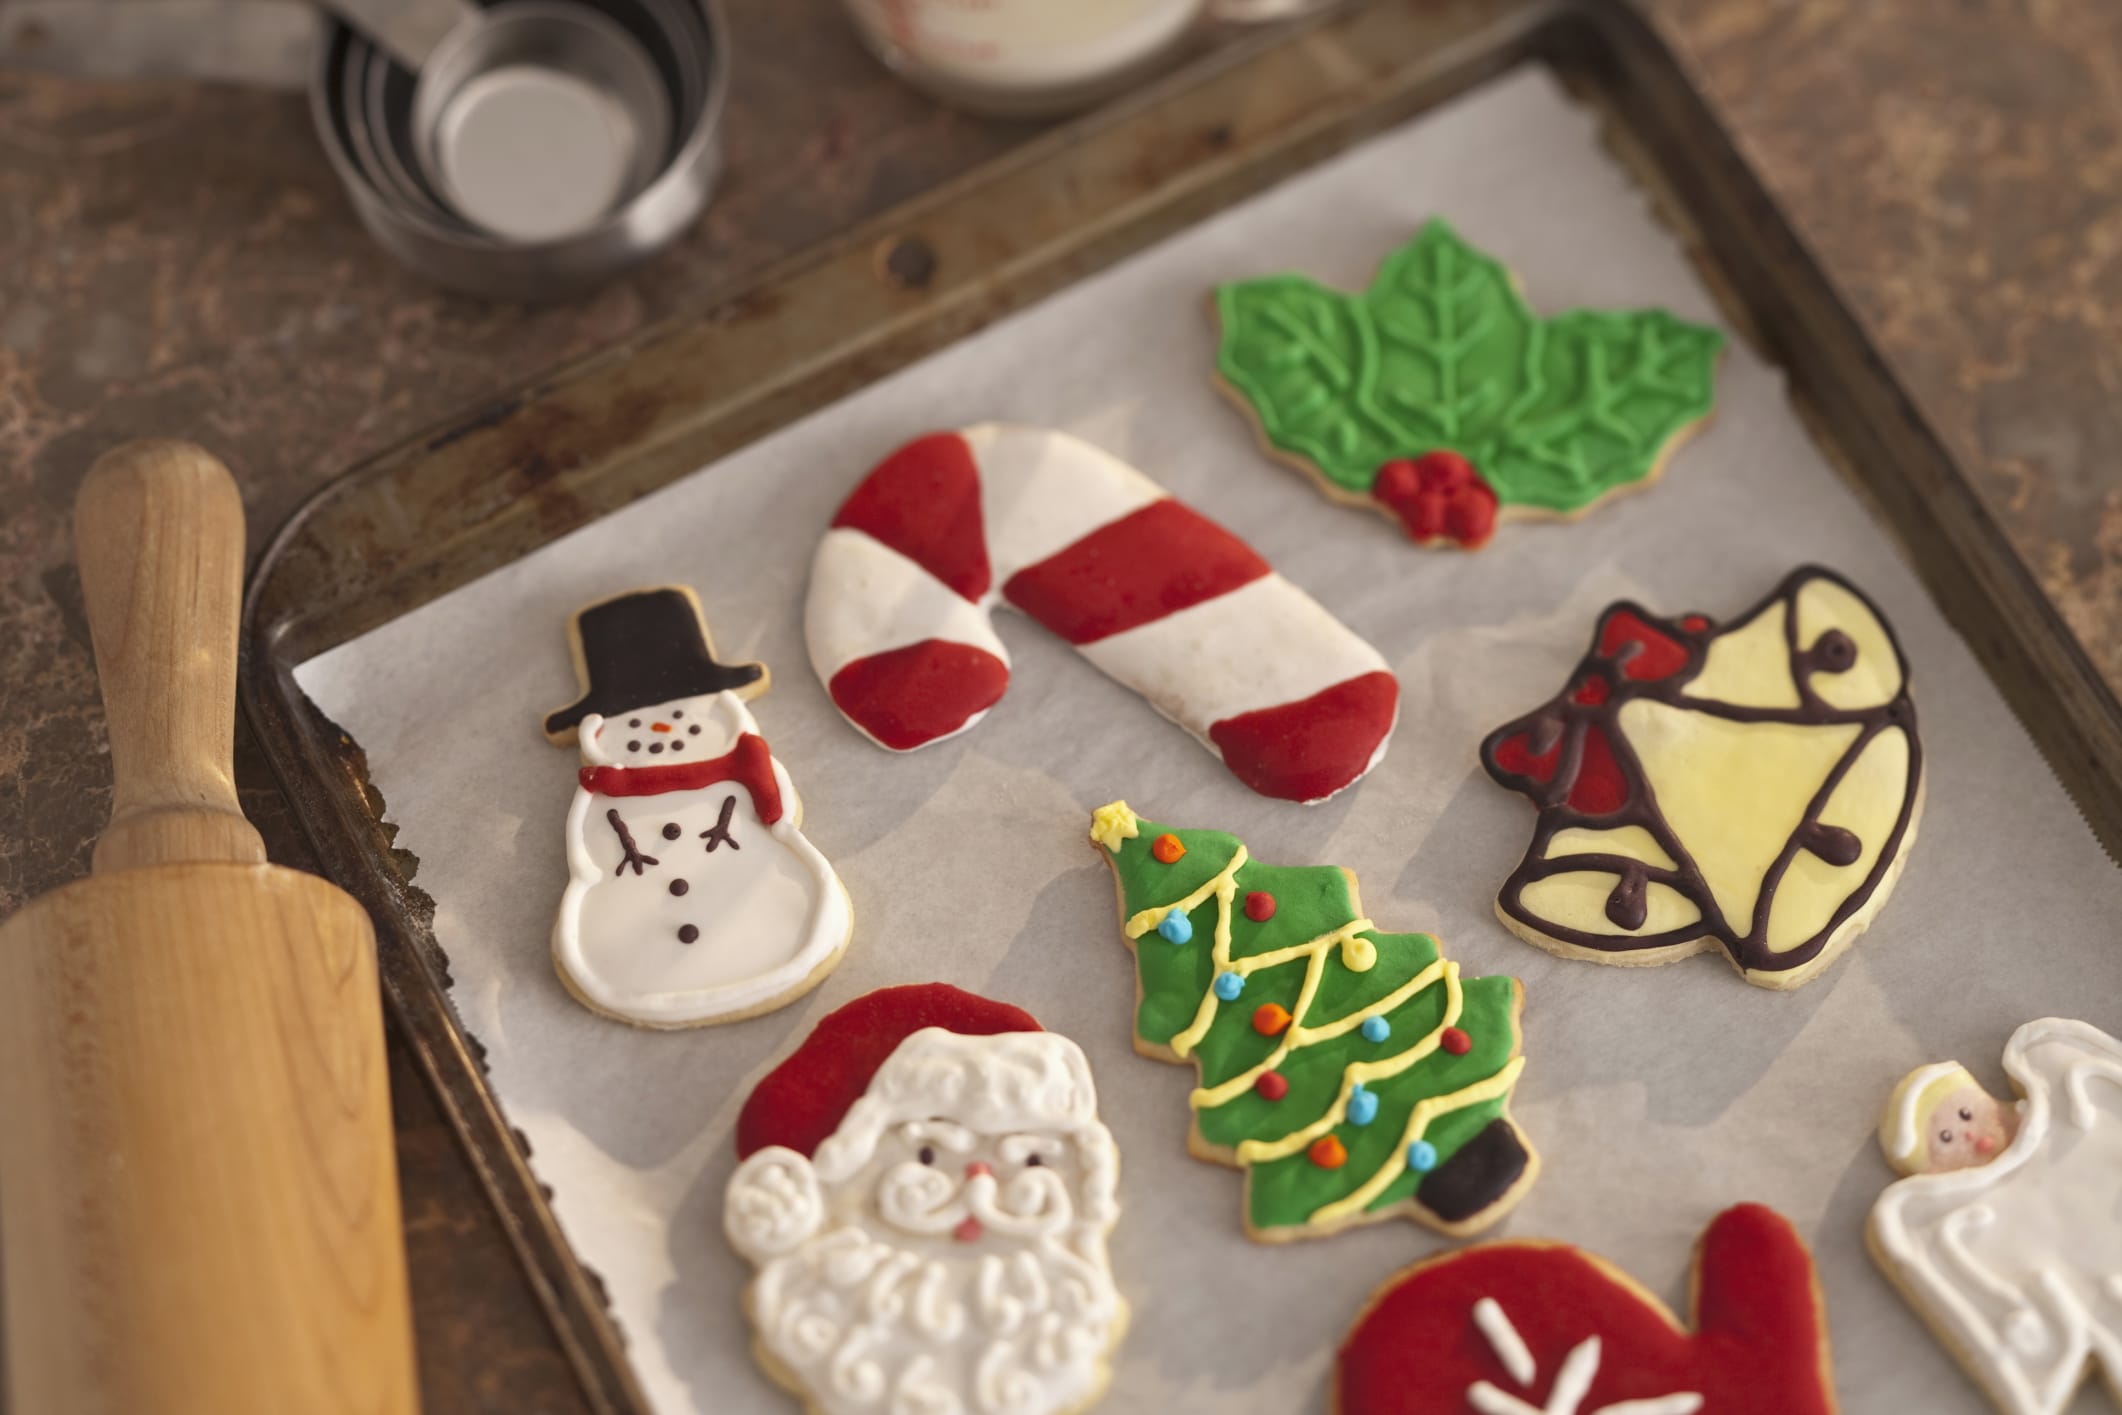 Come Confezionare Biscotti Di Natale.Regali Di Natale Fai Da Te I Biscotti Di Pasta Frolla Con La Glassa